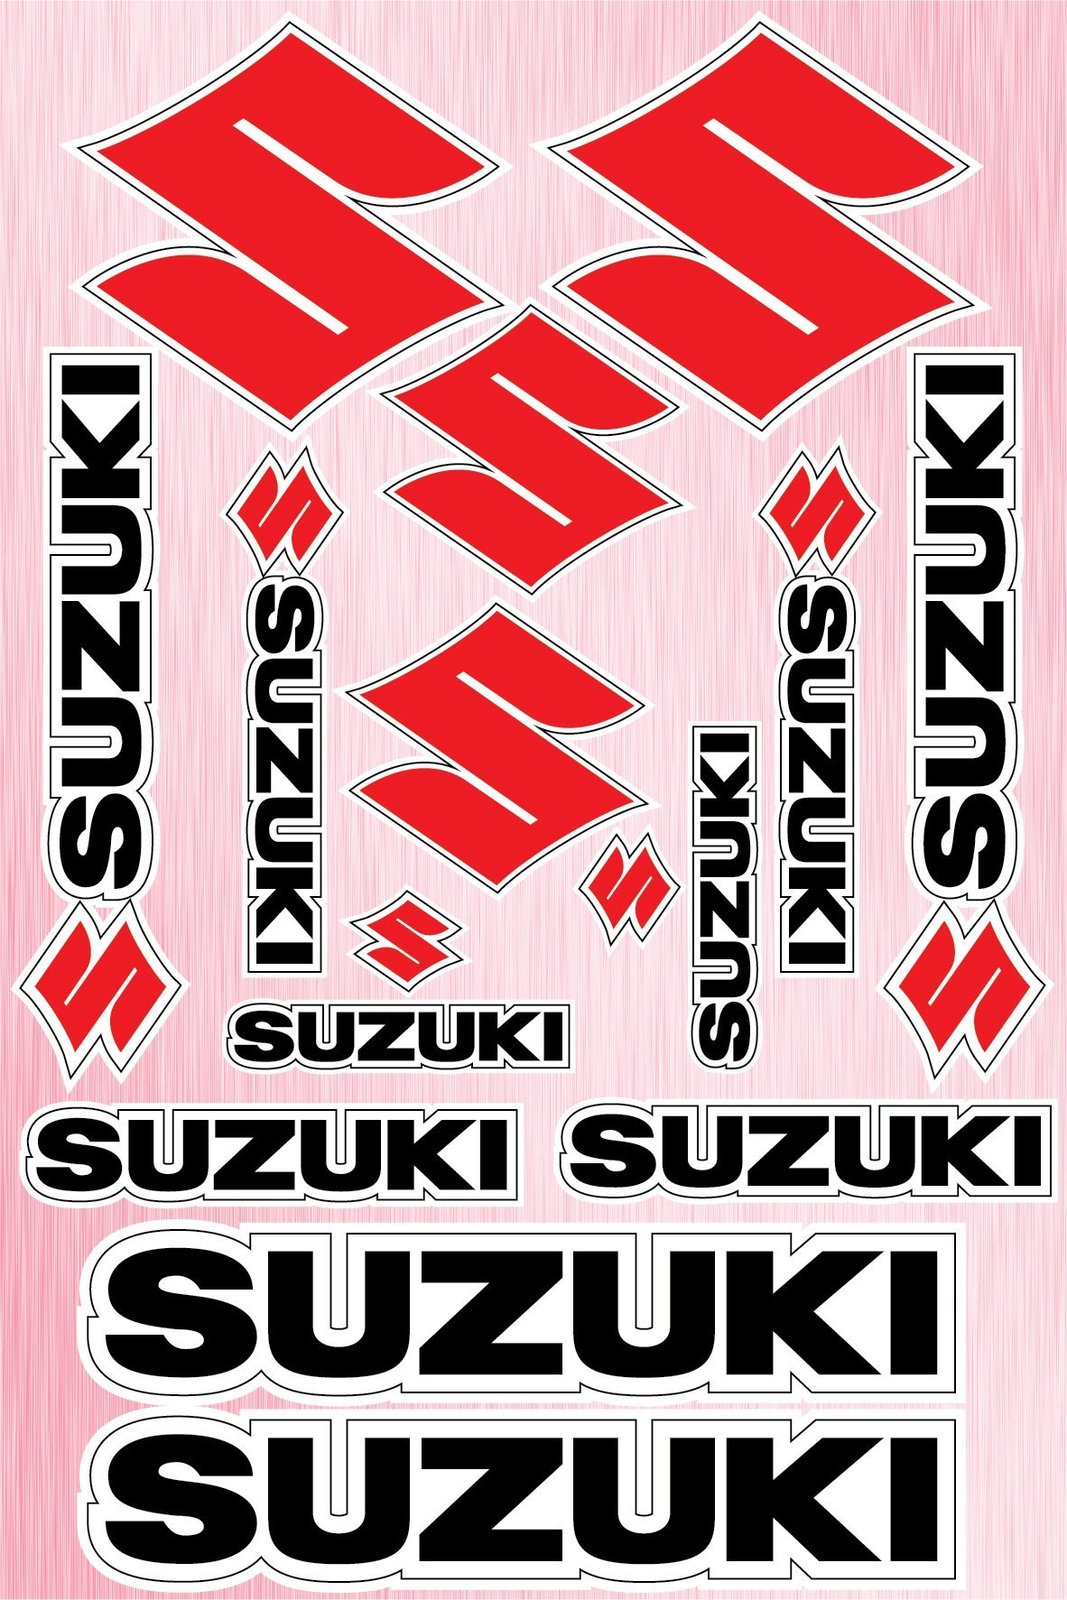 Suzuki sticker for motorcycle - Decals & Stickers